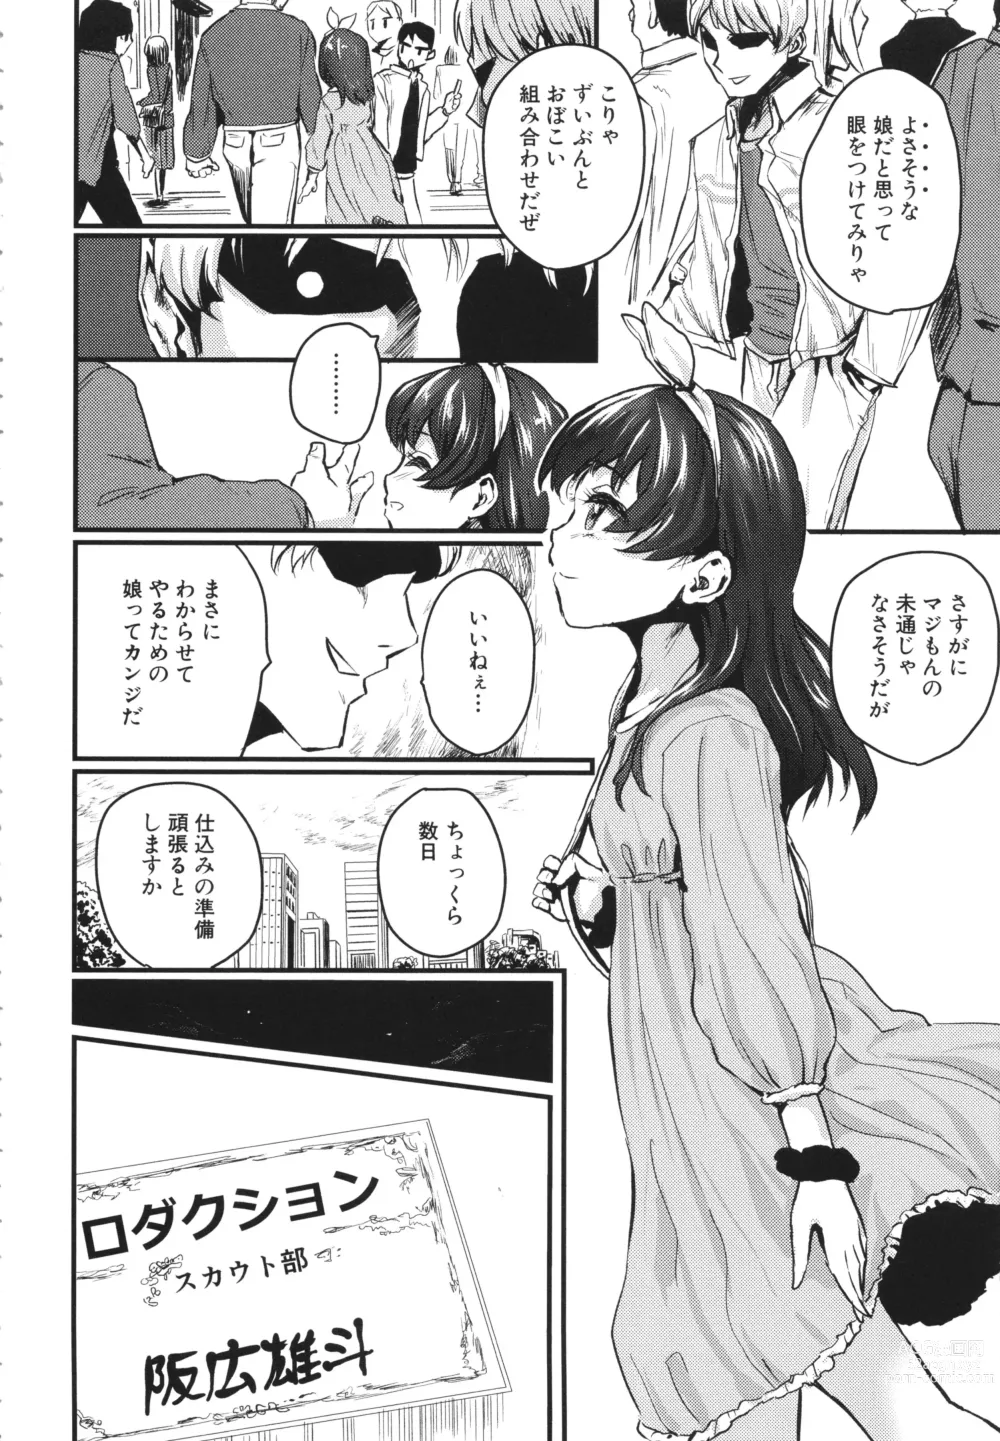 Page 4 of manga Mesu Kobi koubi Osu Bou-sama-tachi ni Kansha no Koshi Furi